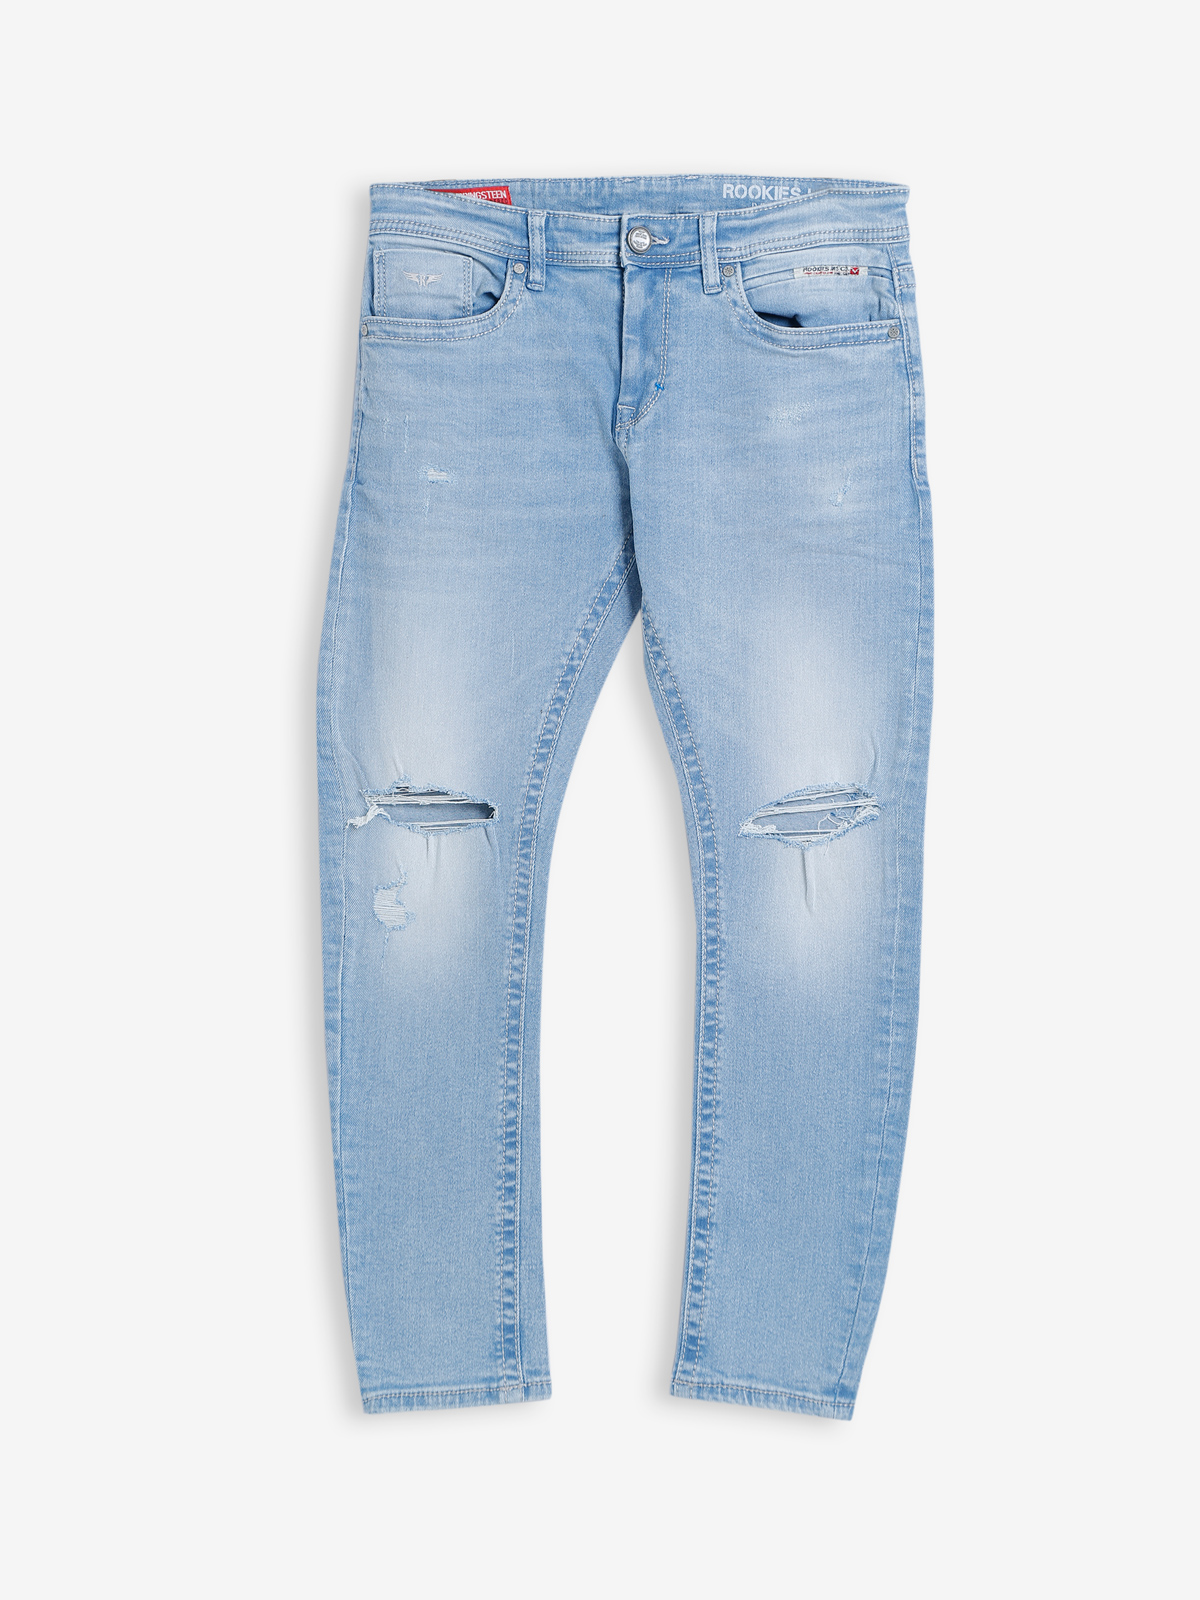 GD006 Light Blue Slim Fit Men Jeans – Noggah Denims